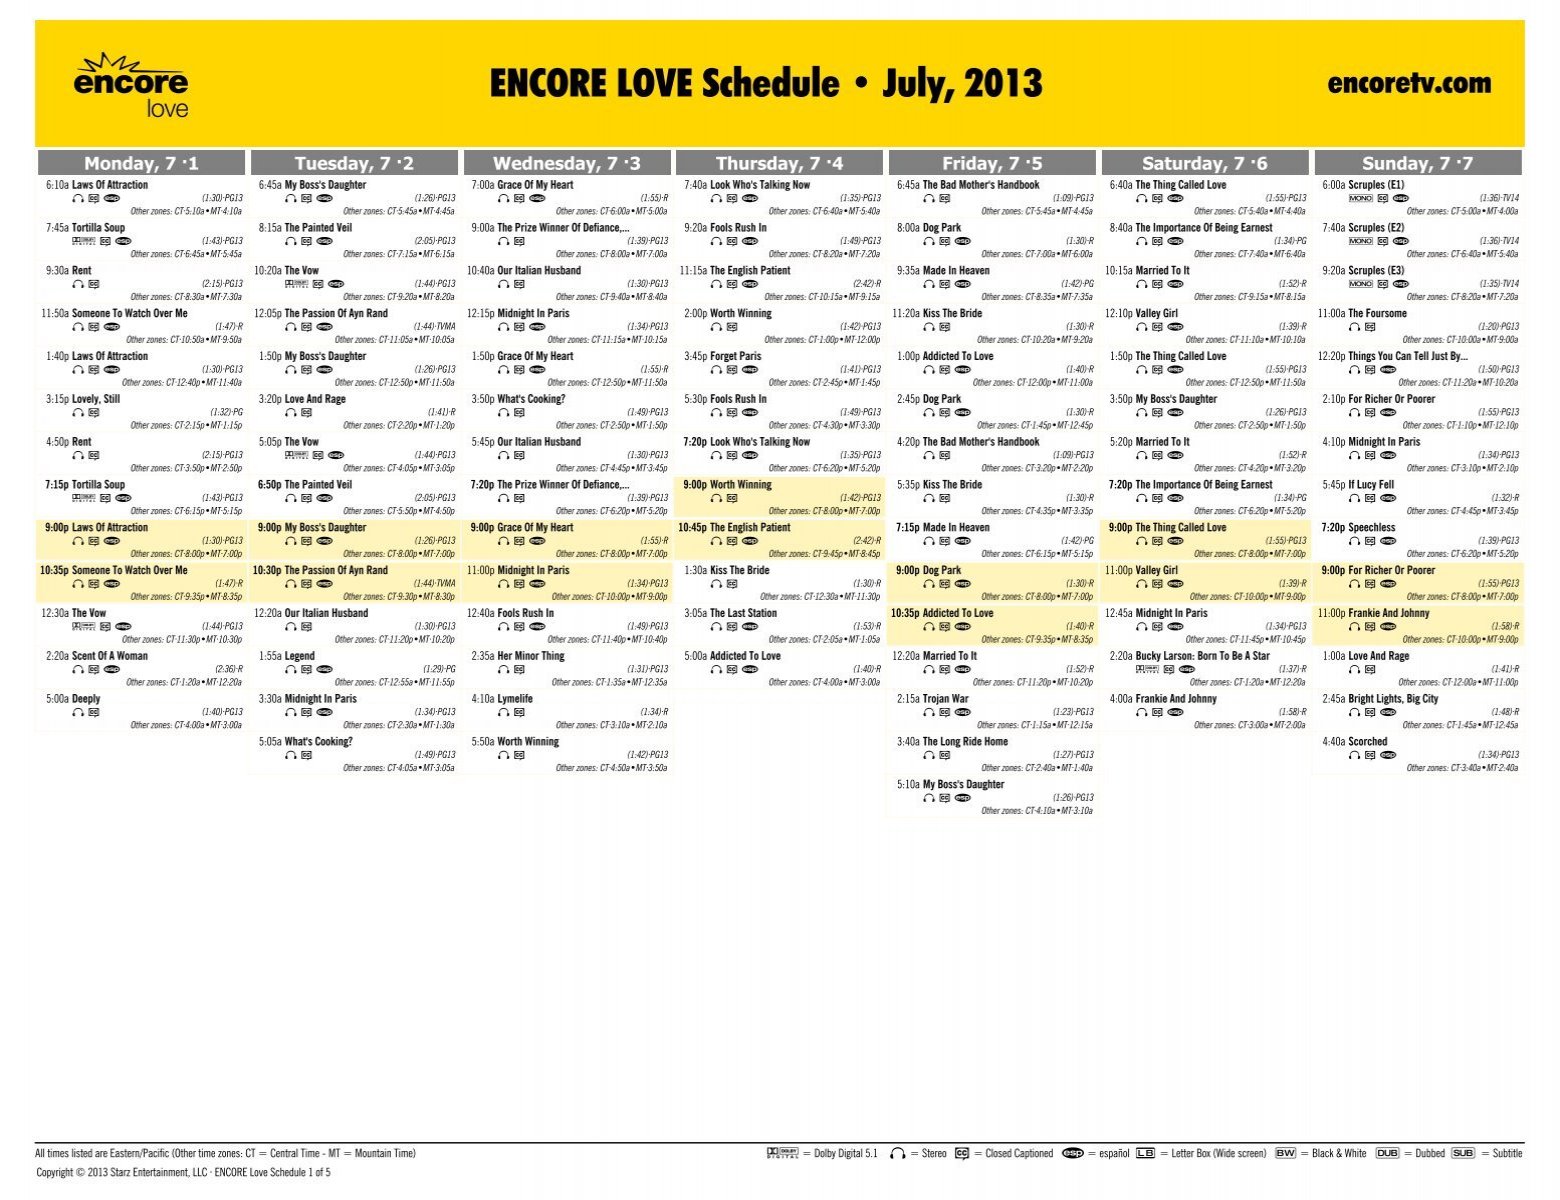 ENCORE LOVE Schedule - July, 2013 - Starz